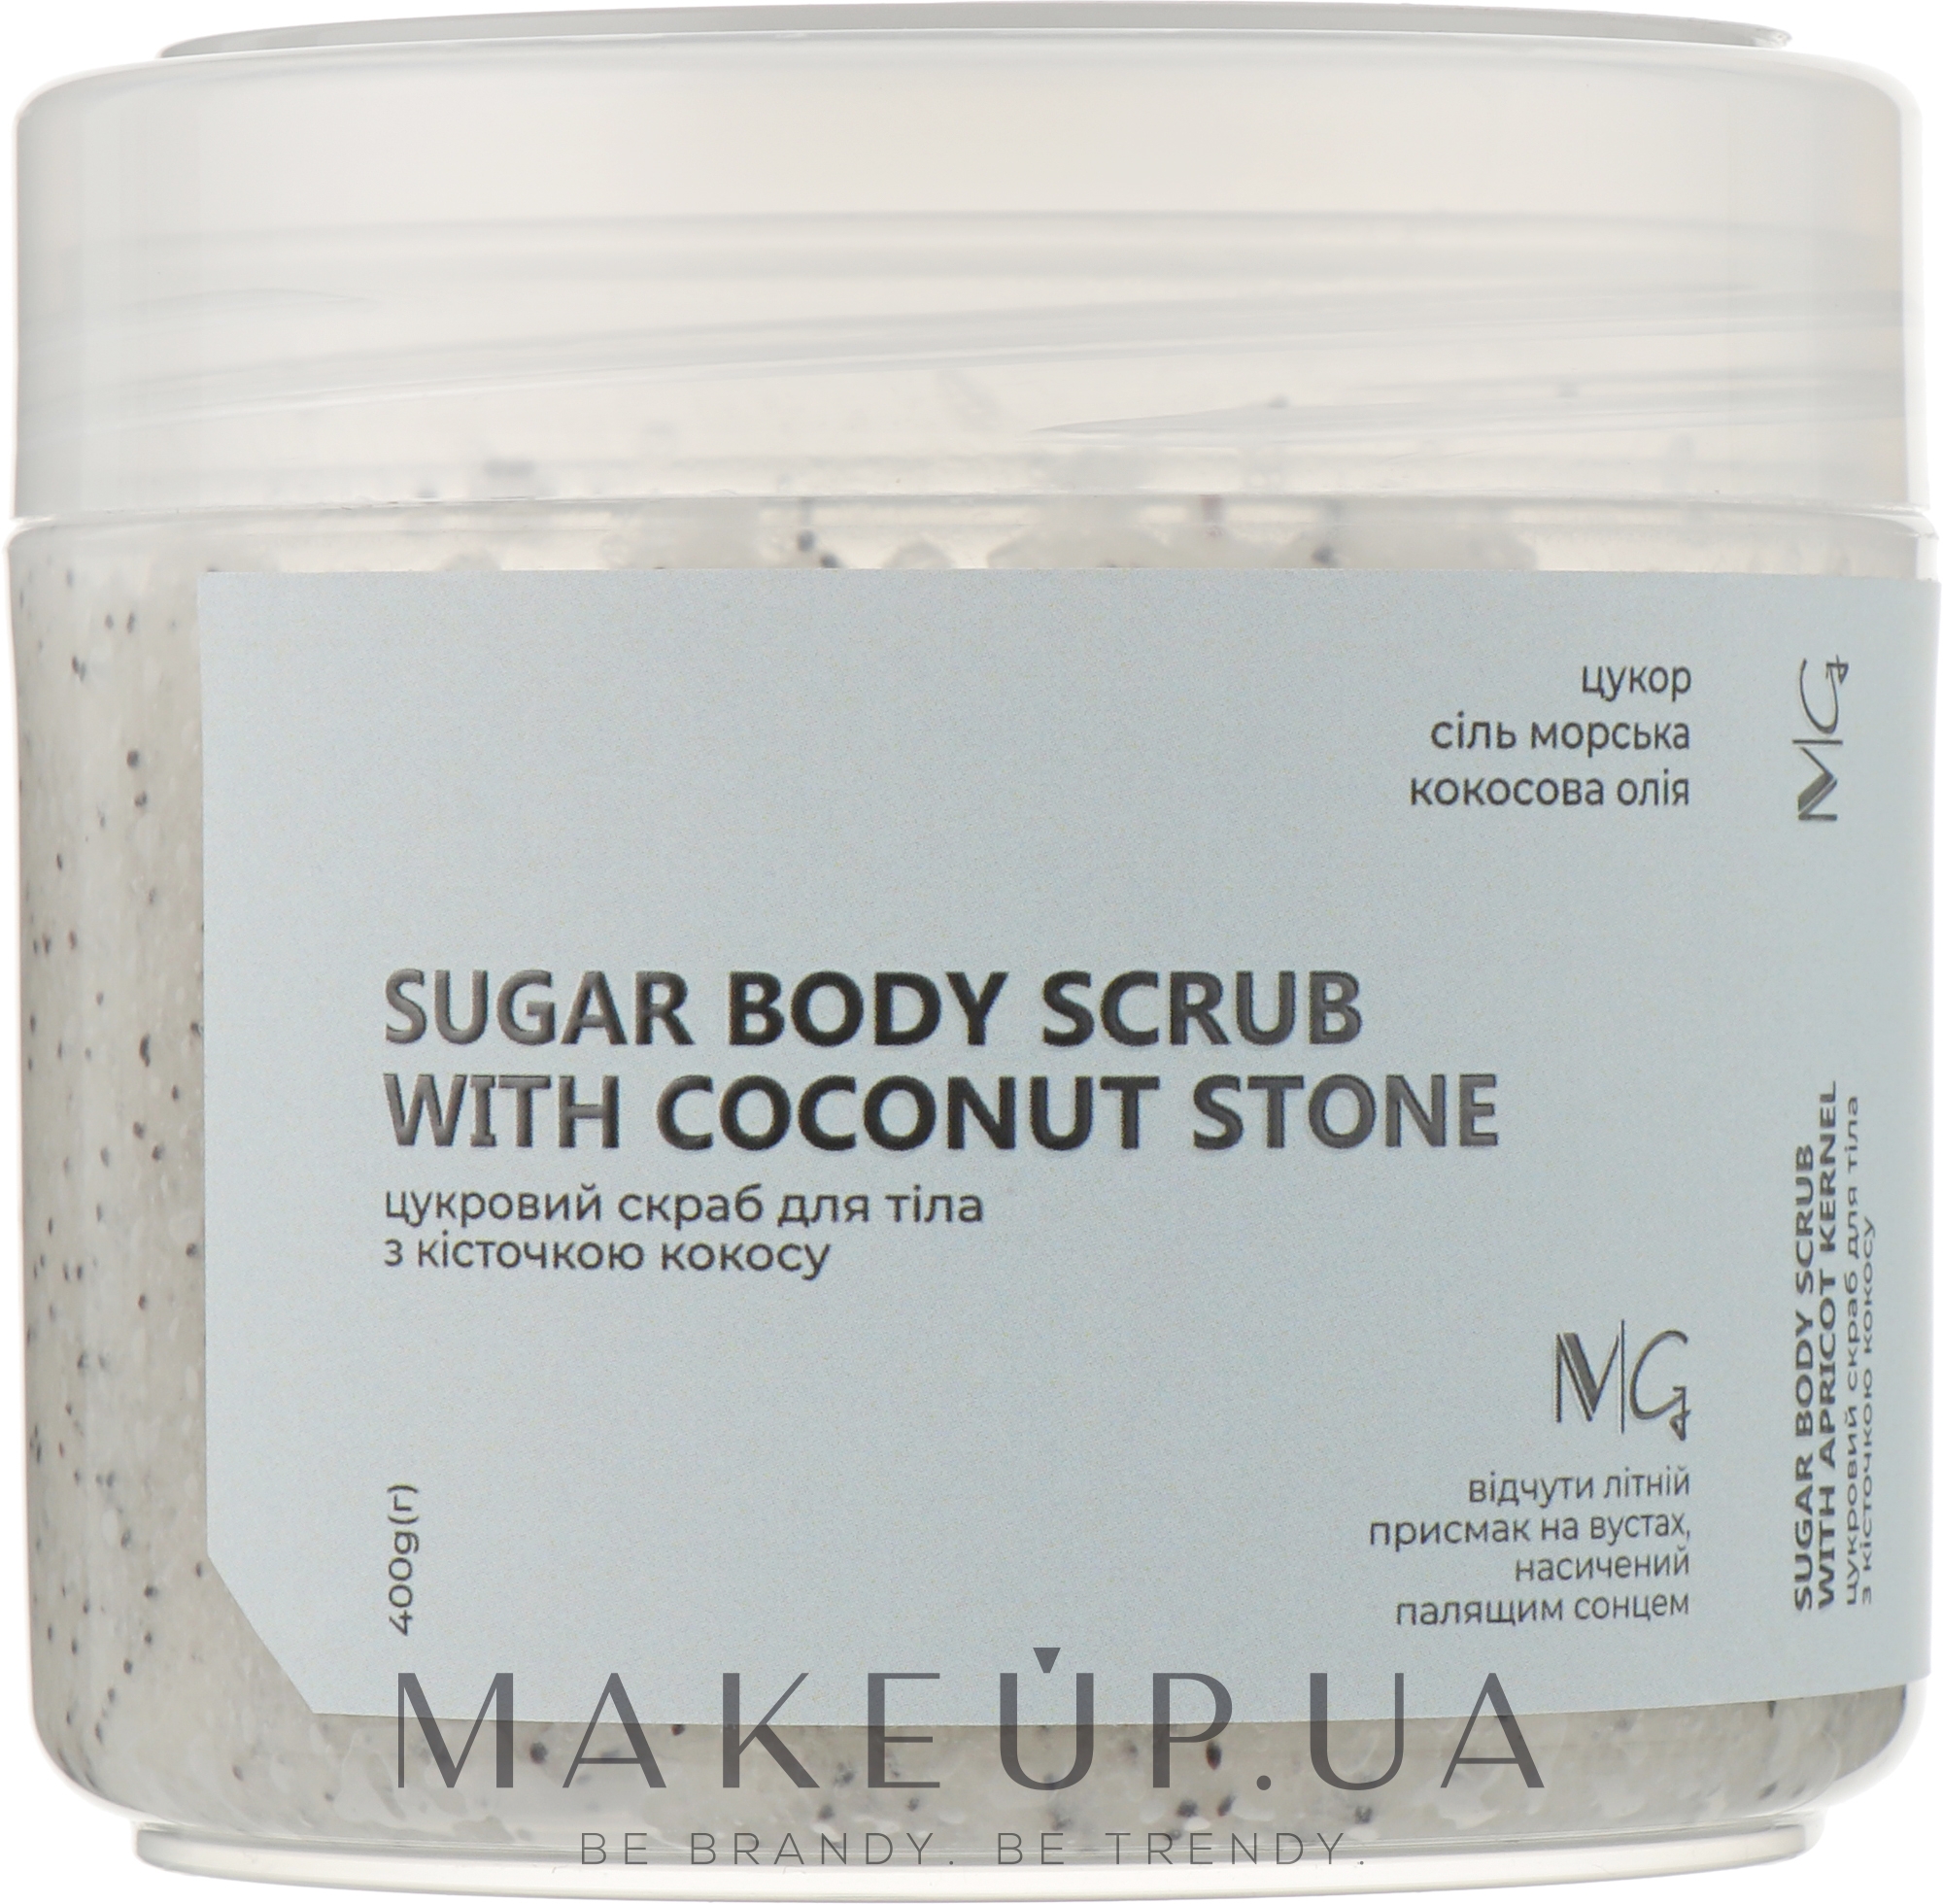 Цукровий скраб для тіла з кісточкою кокоса - MG Sugar Body Scrub With Coconut Stone — фото 400g